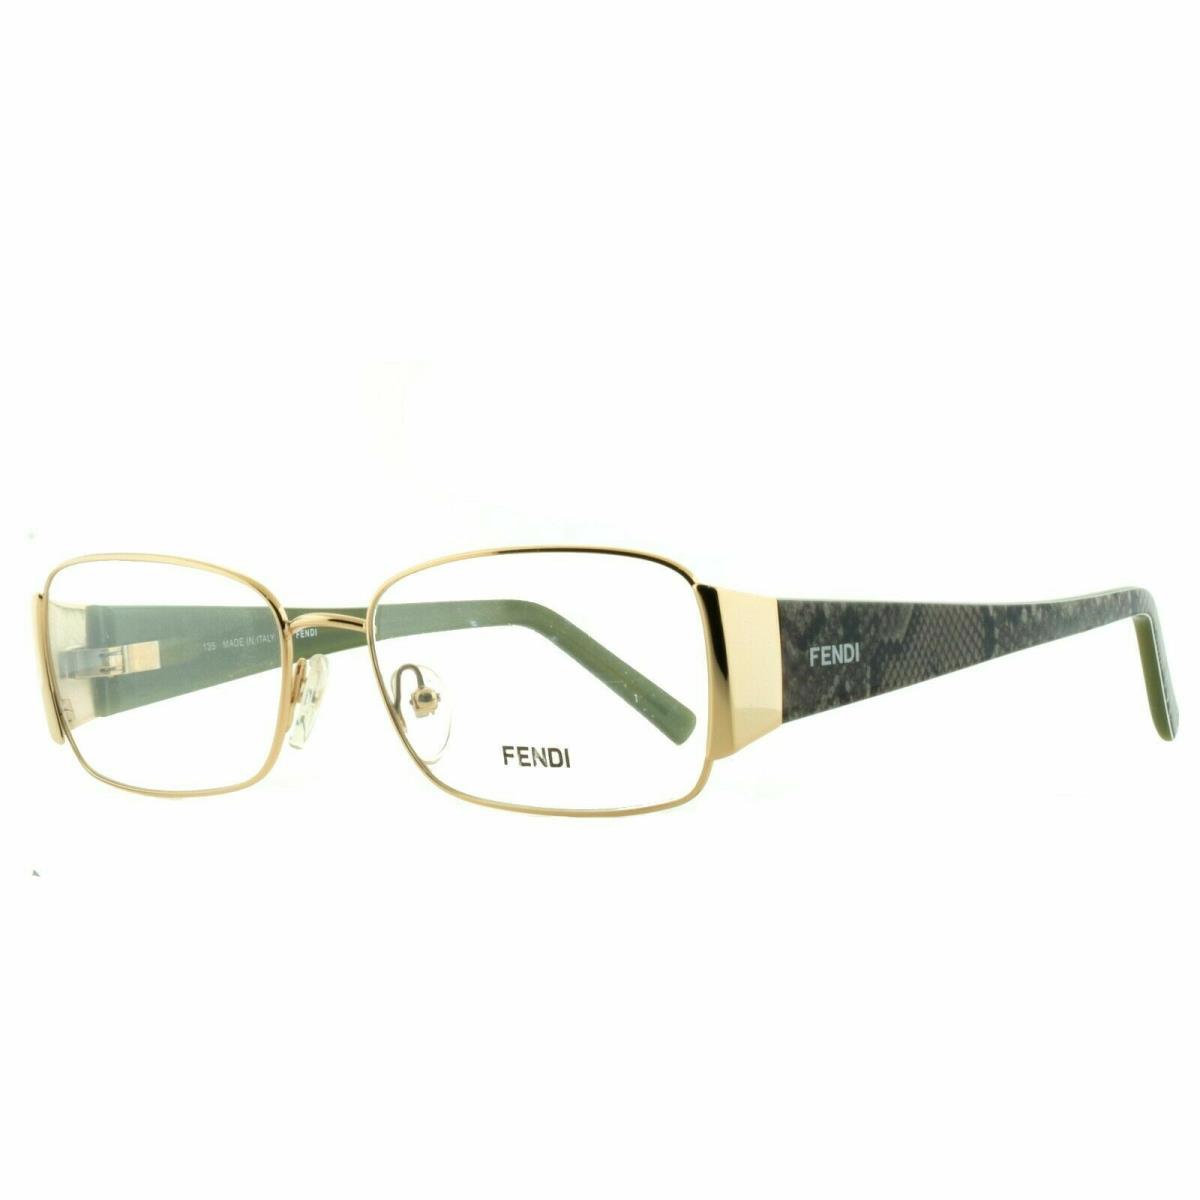 Fendi F873 717 Gold Snake Print Green Rectangular Optical Frames Eyeglasses